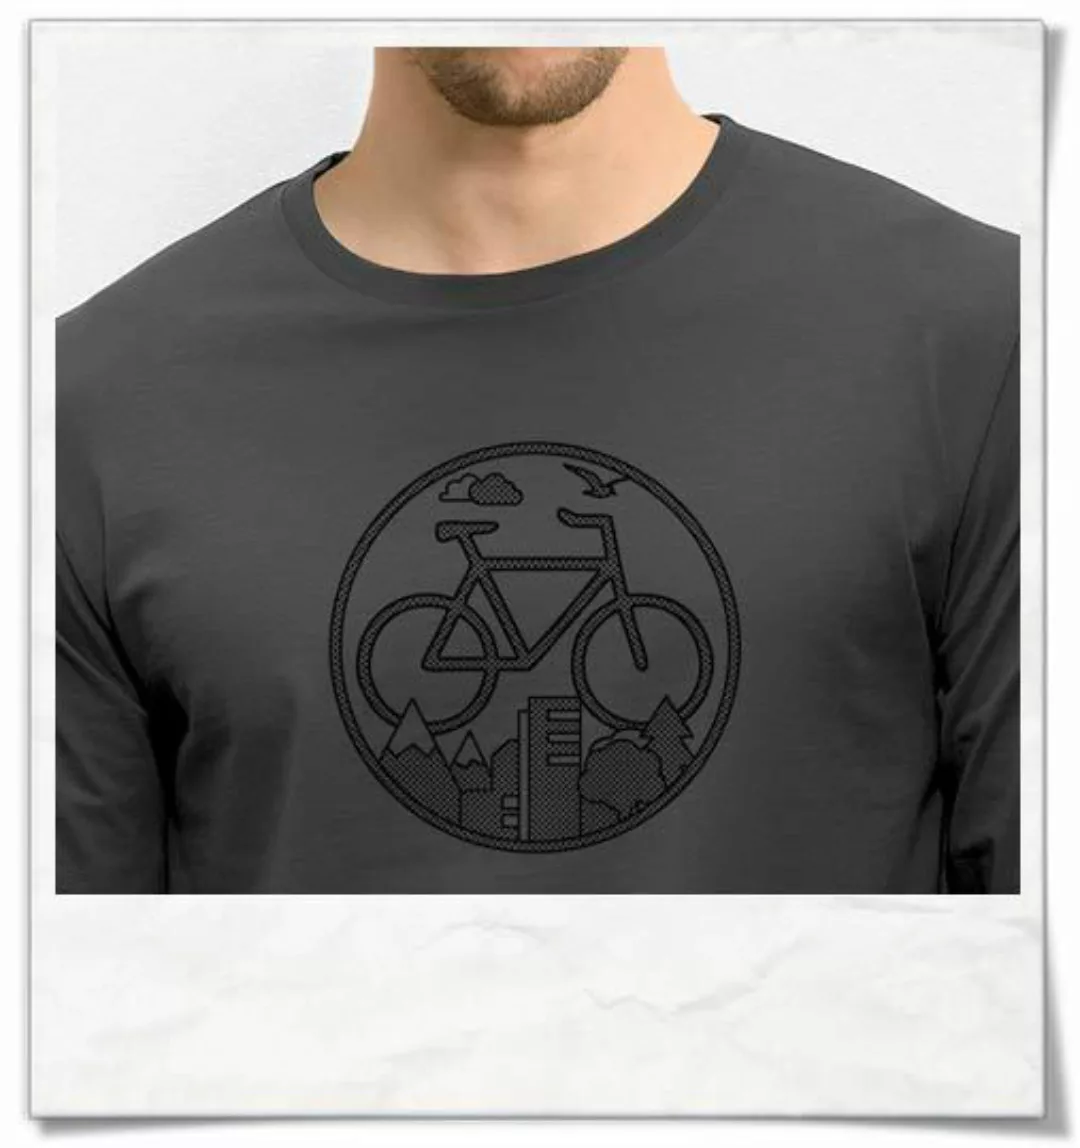 Fahrrad / Bike Langarm T-shirt In Grau & Schwarz günstig online kaufen